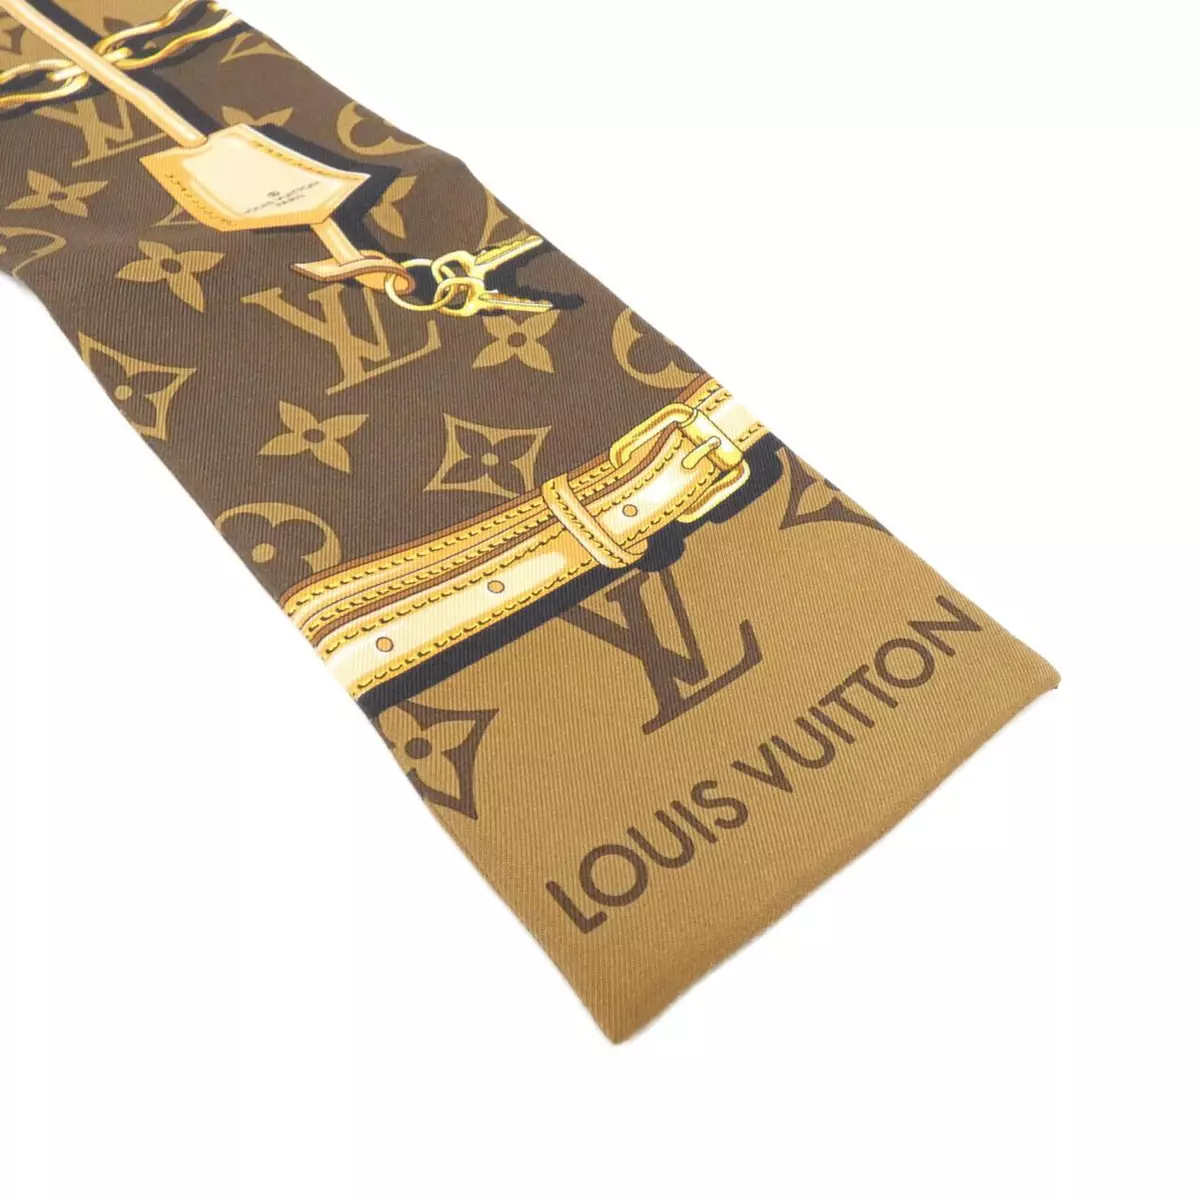 Unboxing Louis Vuitton Monogram Confidential Bandeau